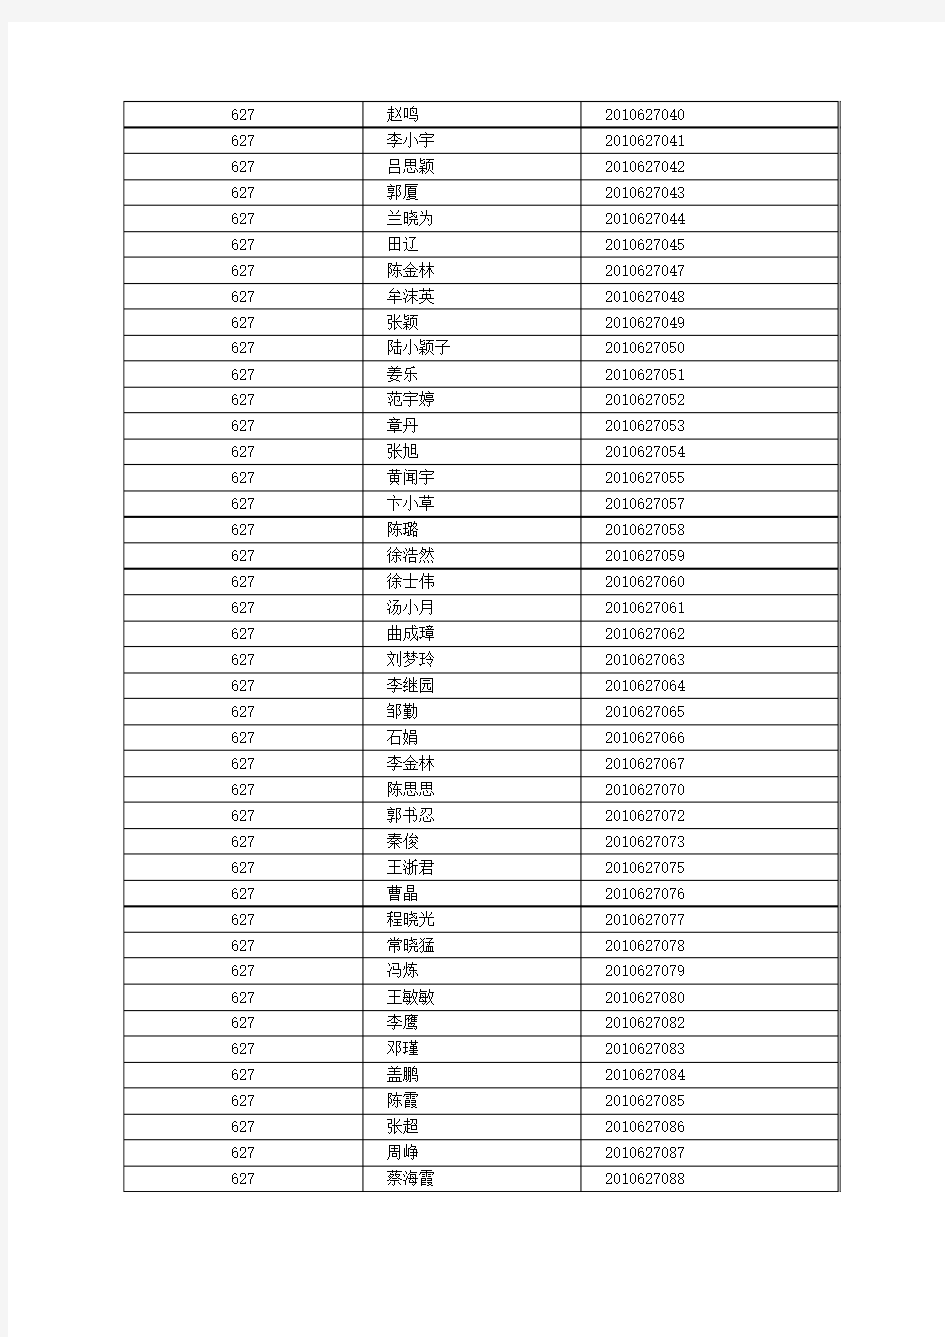 武汉大学 2010年国家公派研究生项目录取人员名单